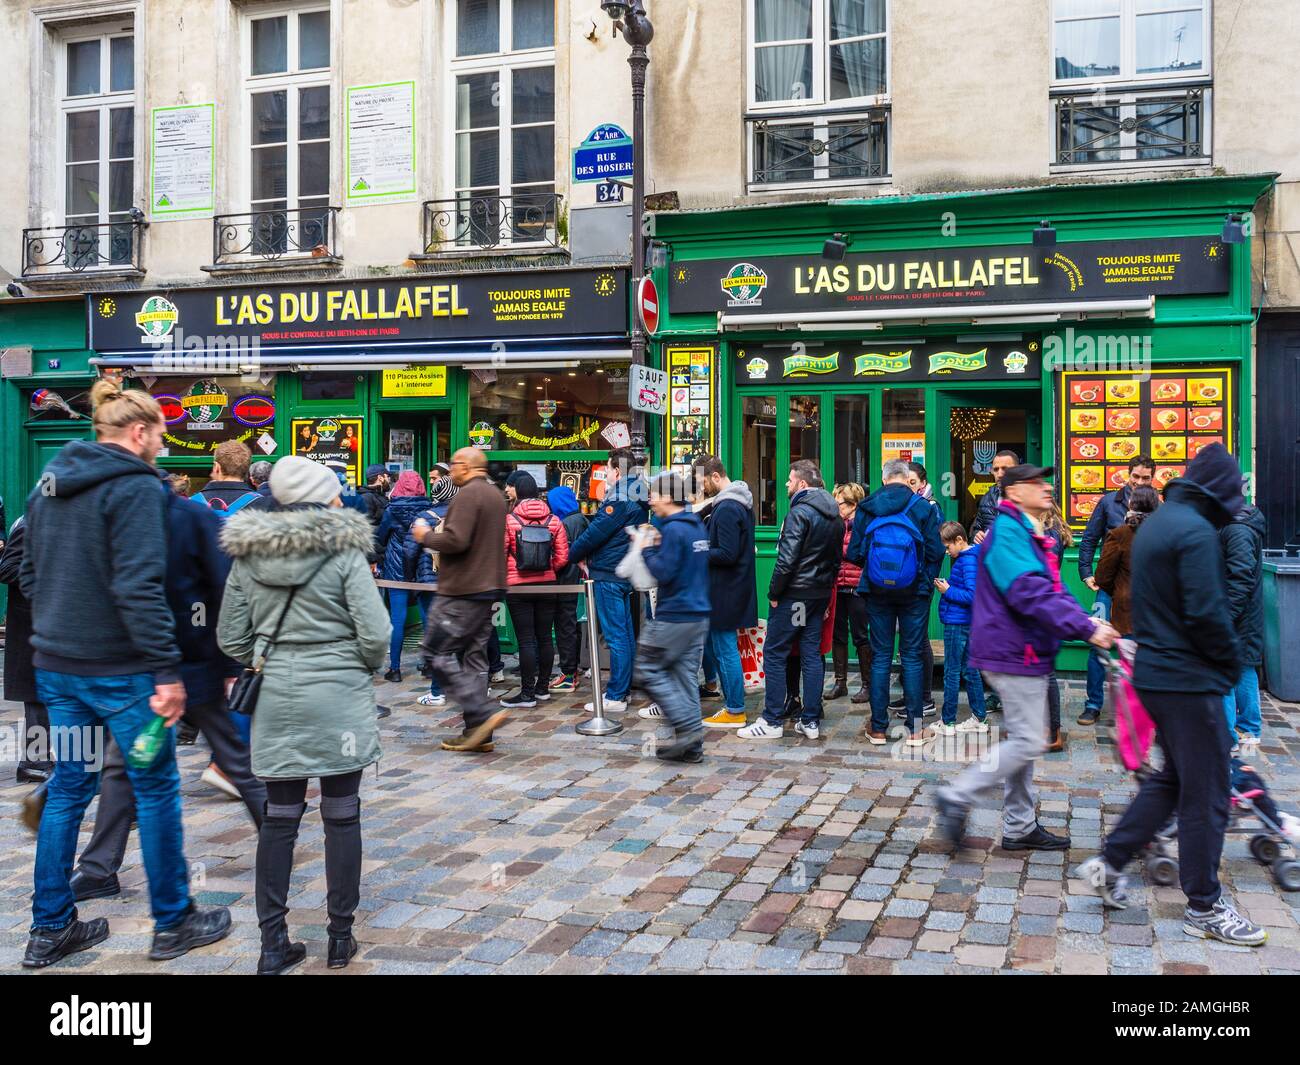 PARIS L'As du Fallafel jüdisches Restaurant im Marais-Viertel  Stockfotografie - Alamy